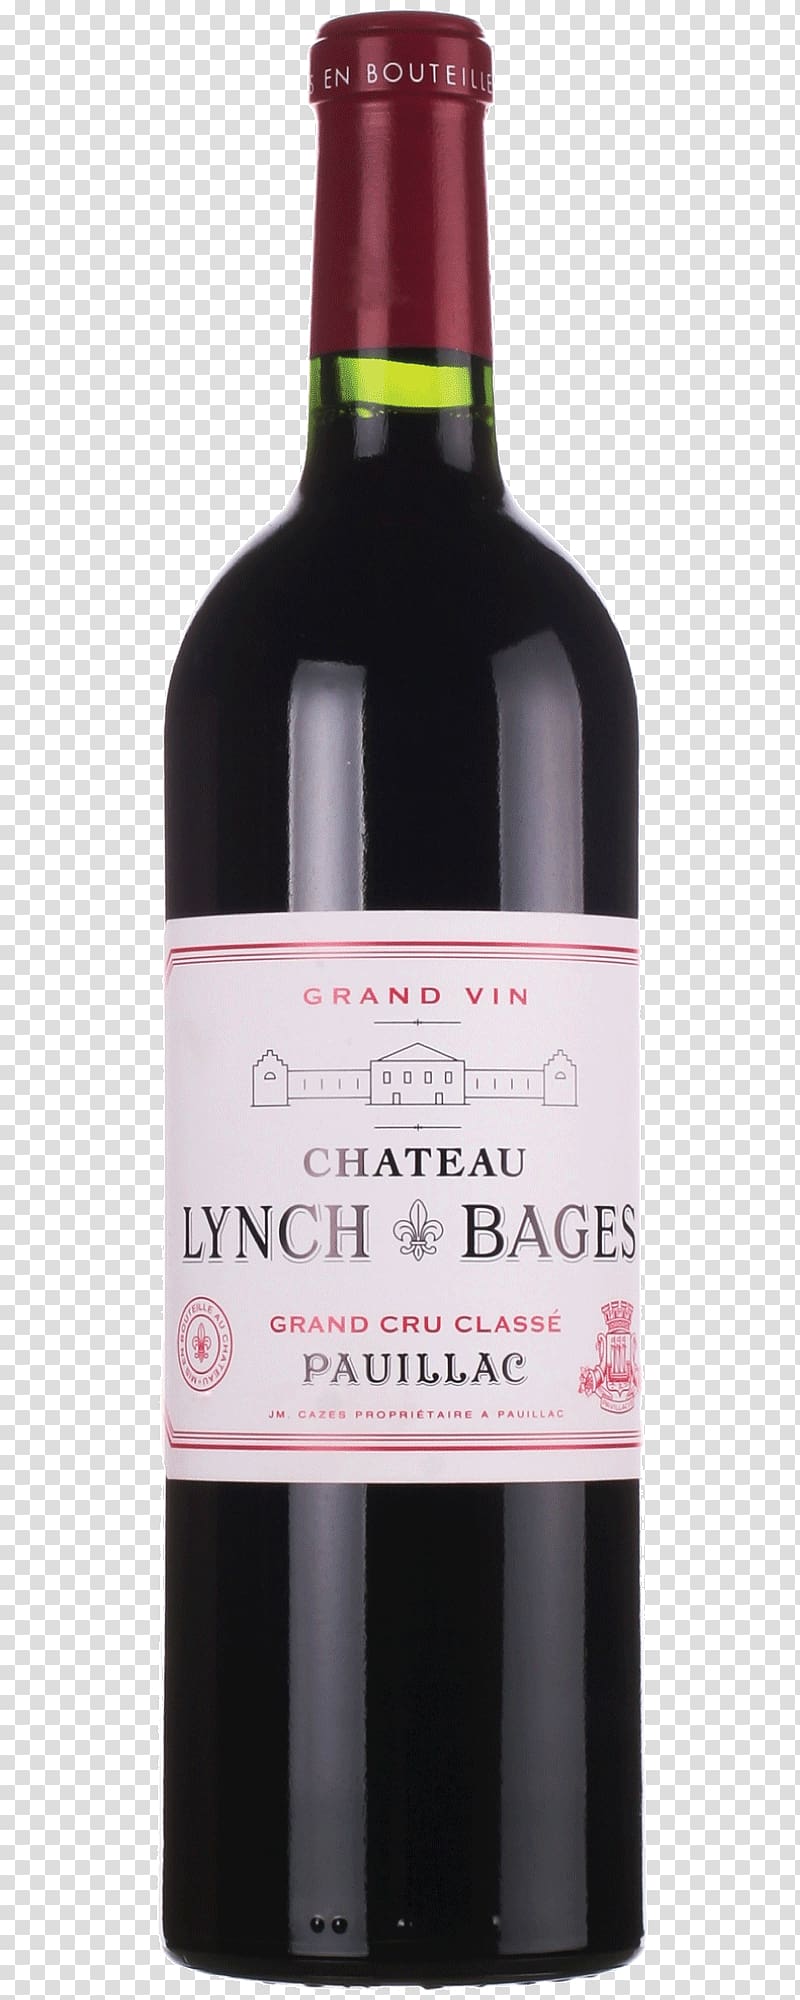 Château Lynch-Bages Wine Pauillac Château Beauregard Haut-Médoc AOC, wine transparent background PNG clipart